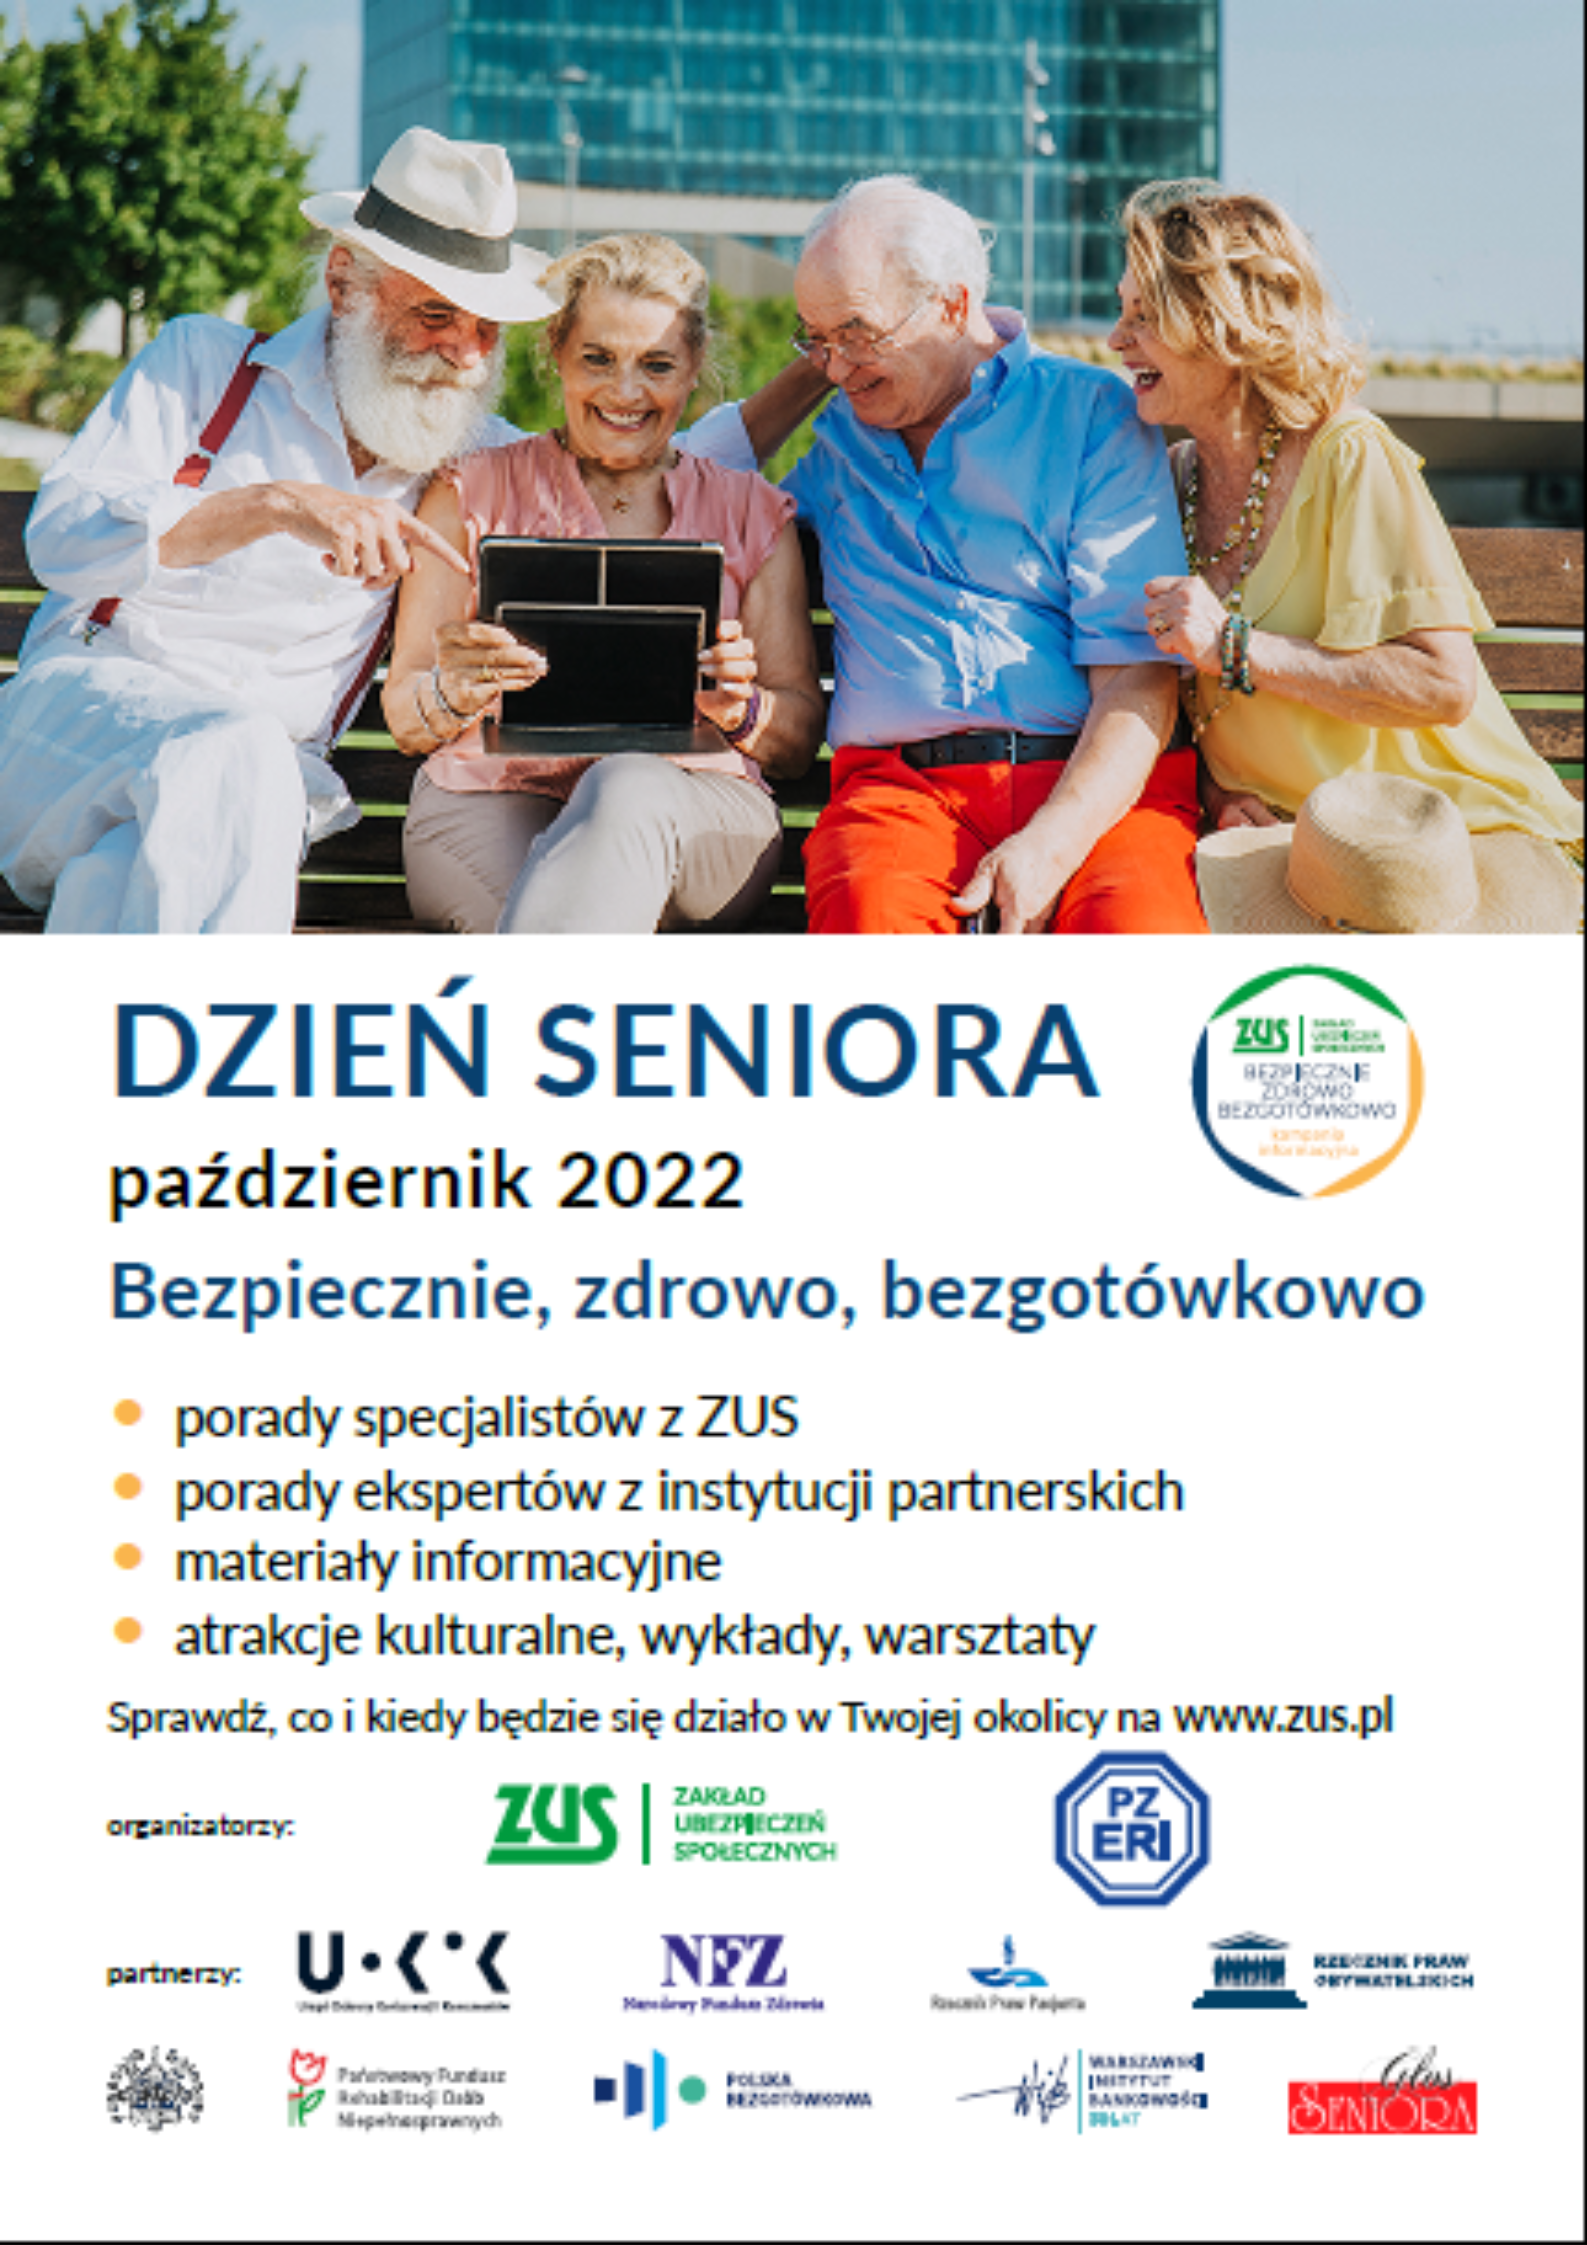 Plakat promujący Dzień seniora w ZUS - w miesiącu październiku